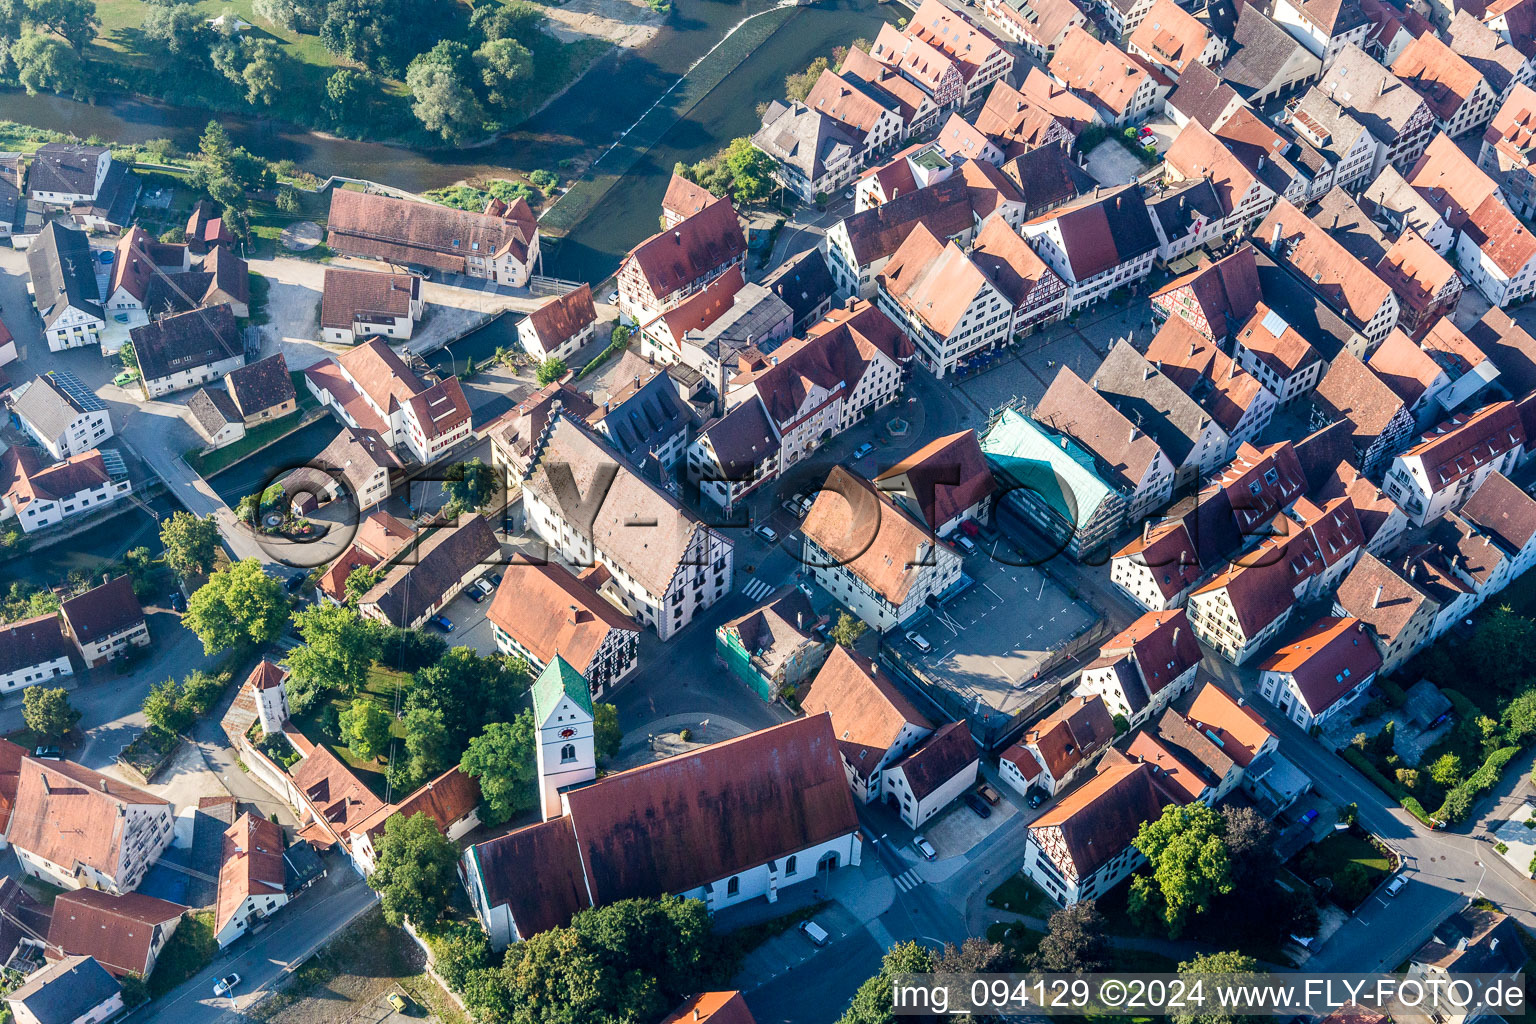 Vue aérienne de Bâtiment d'église au centre du village à Riedlingen dans le département Bade-Wurtemberg, Allemagne